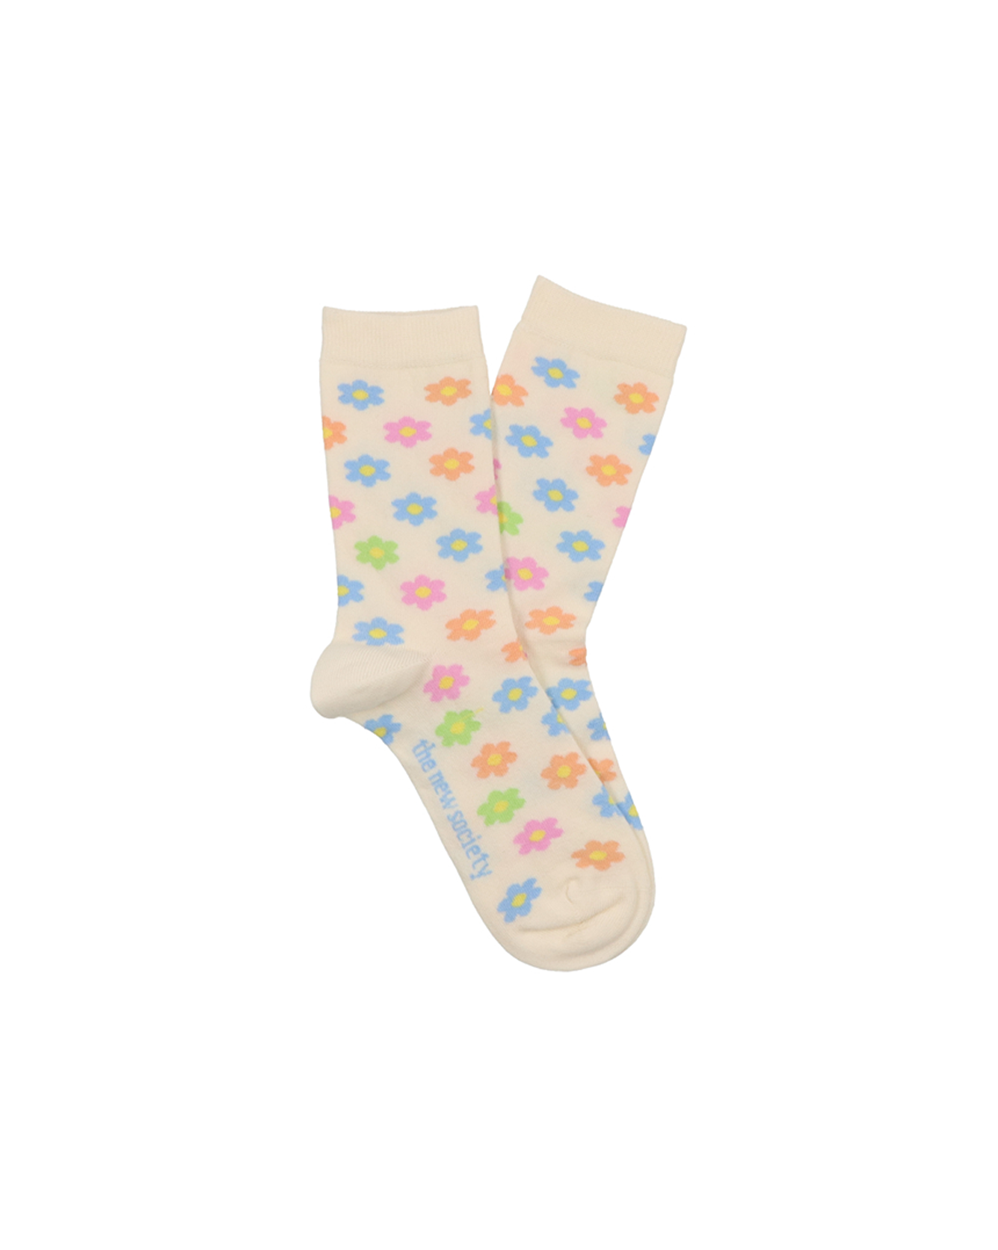 [THE NEW SOCIETY] Socks Daisy